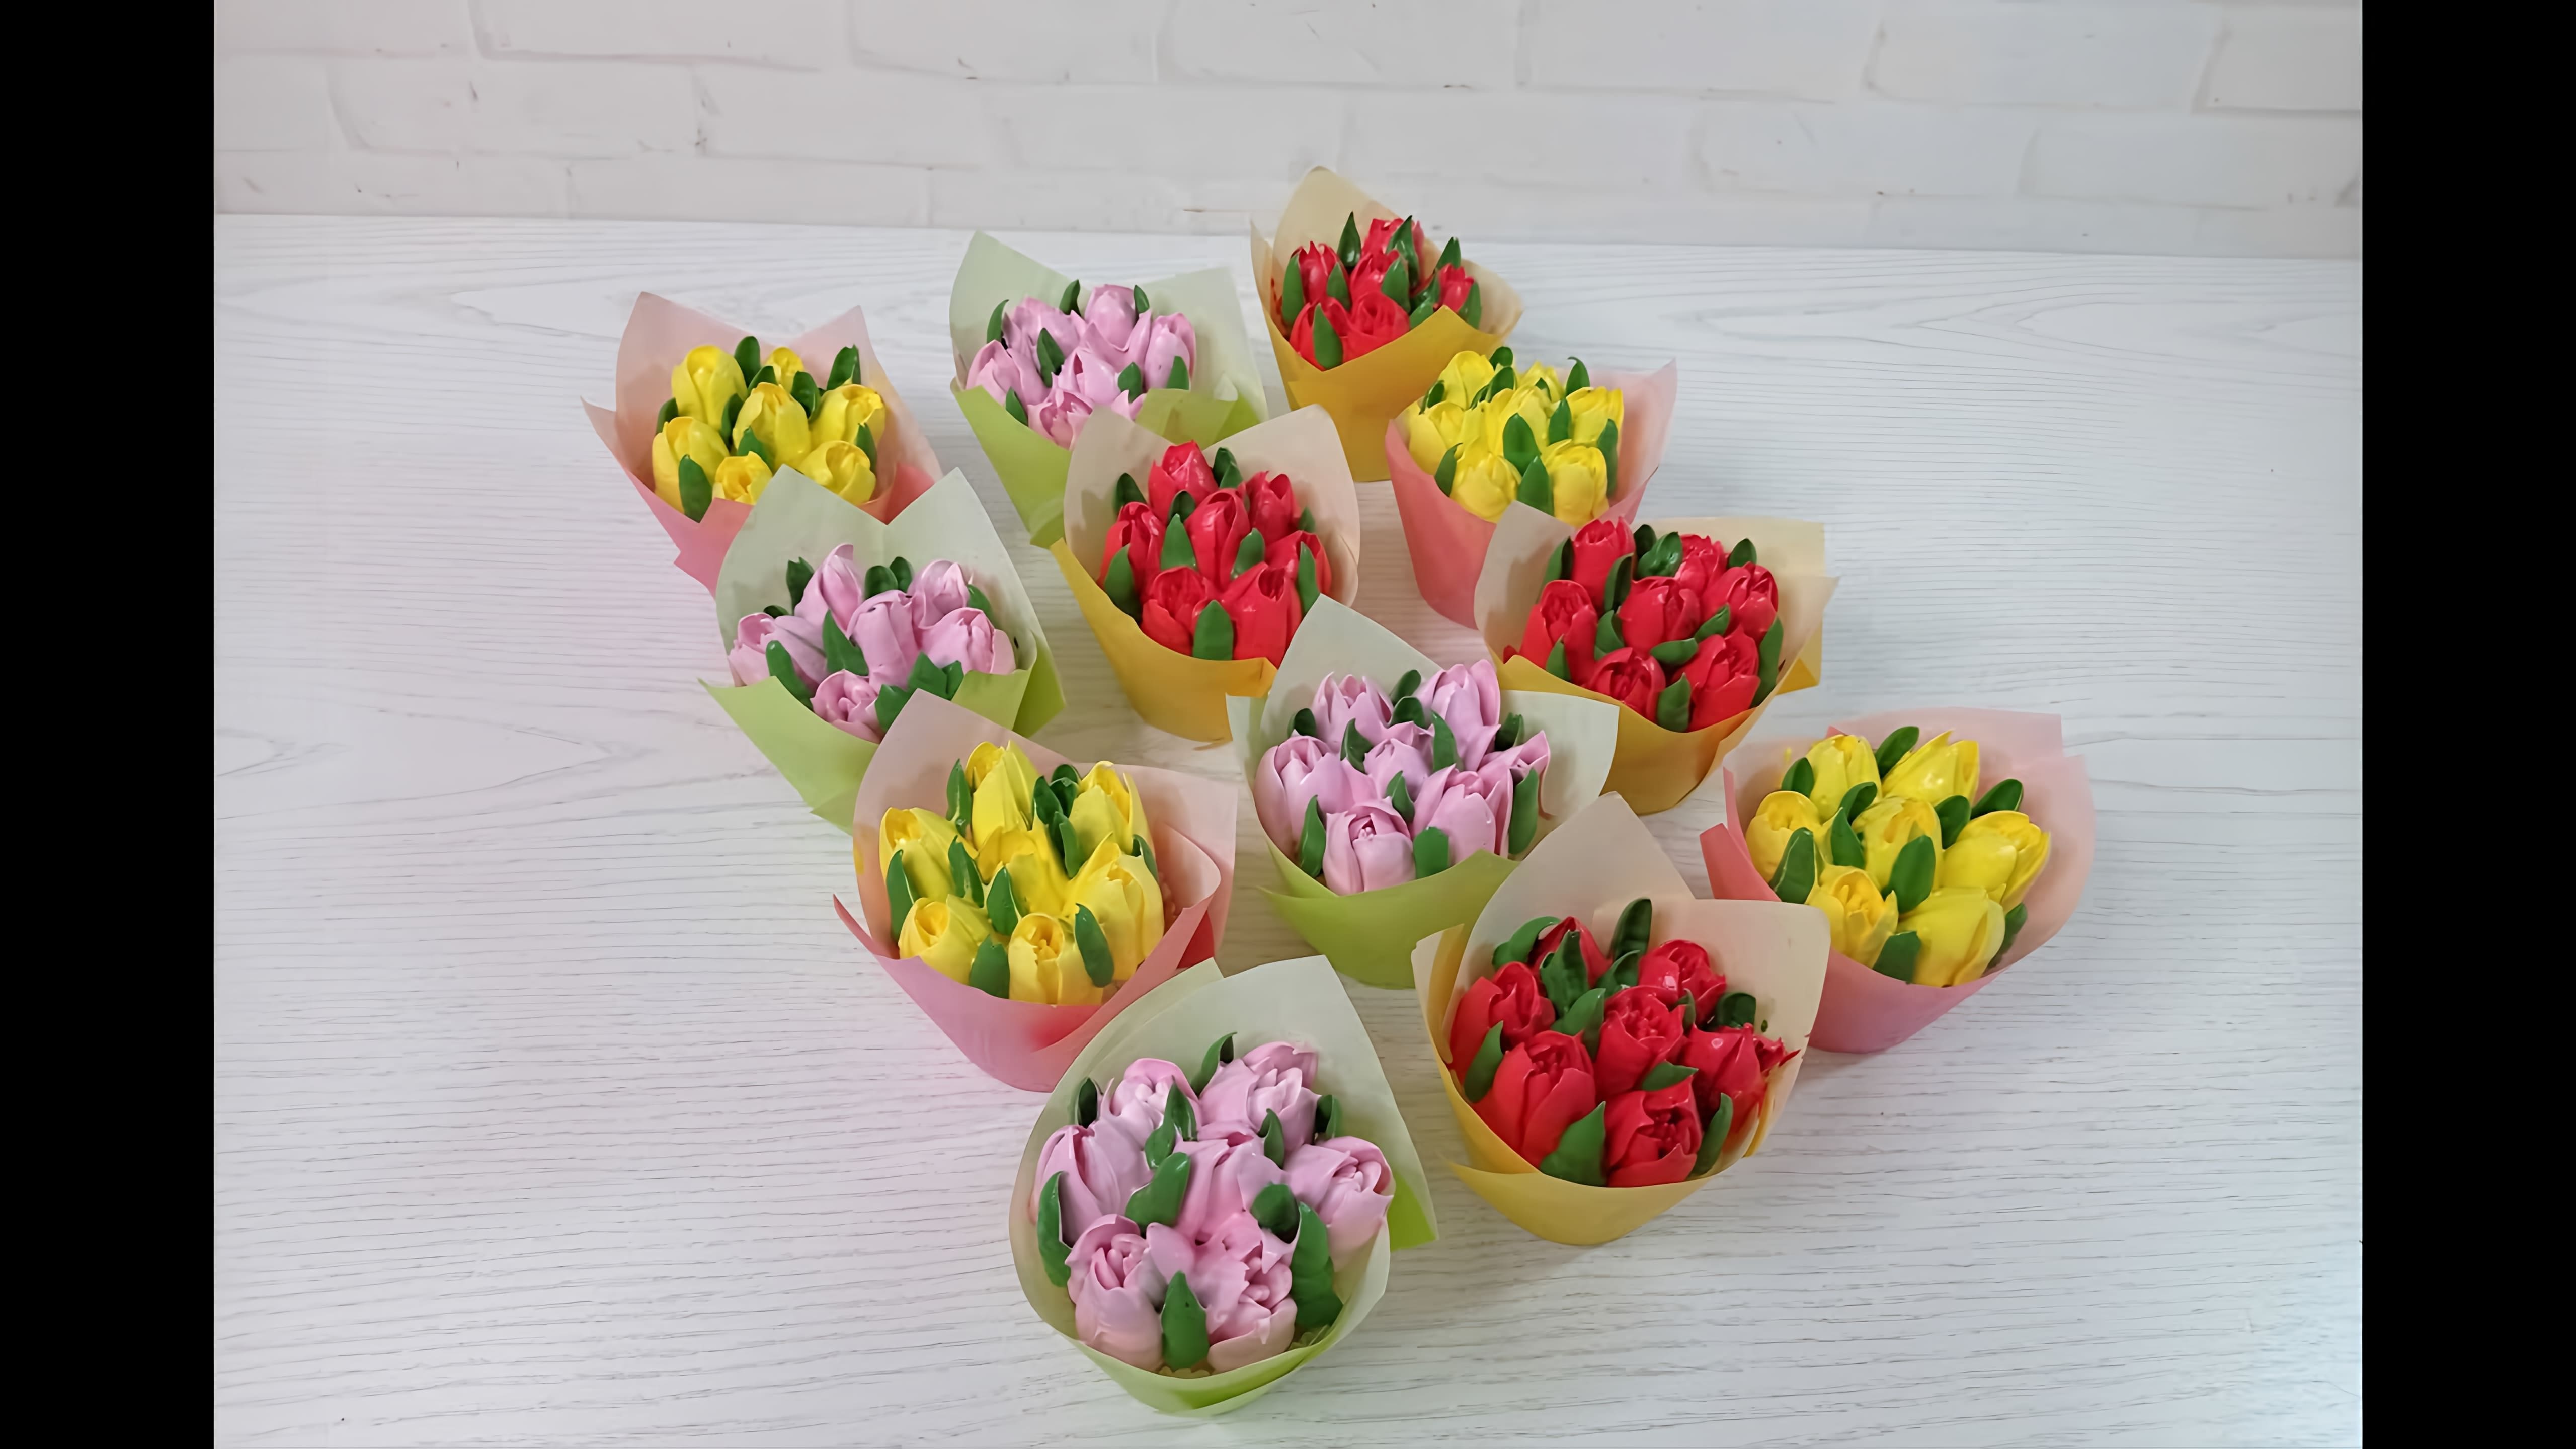 В данном видео демонстрируется процесс украшения капкейков в виде букетиков тюльпанов